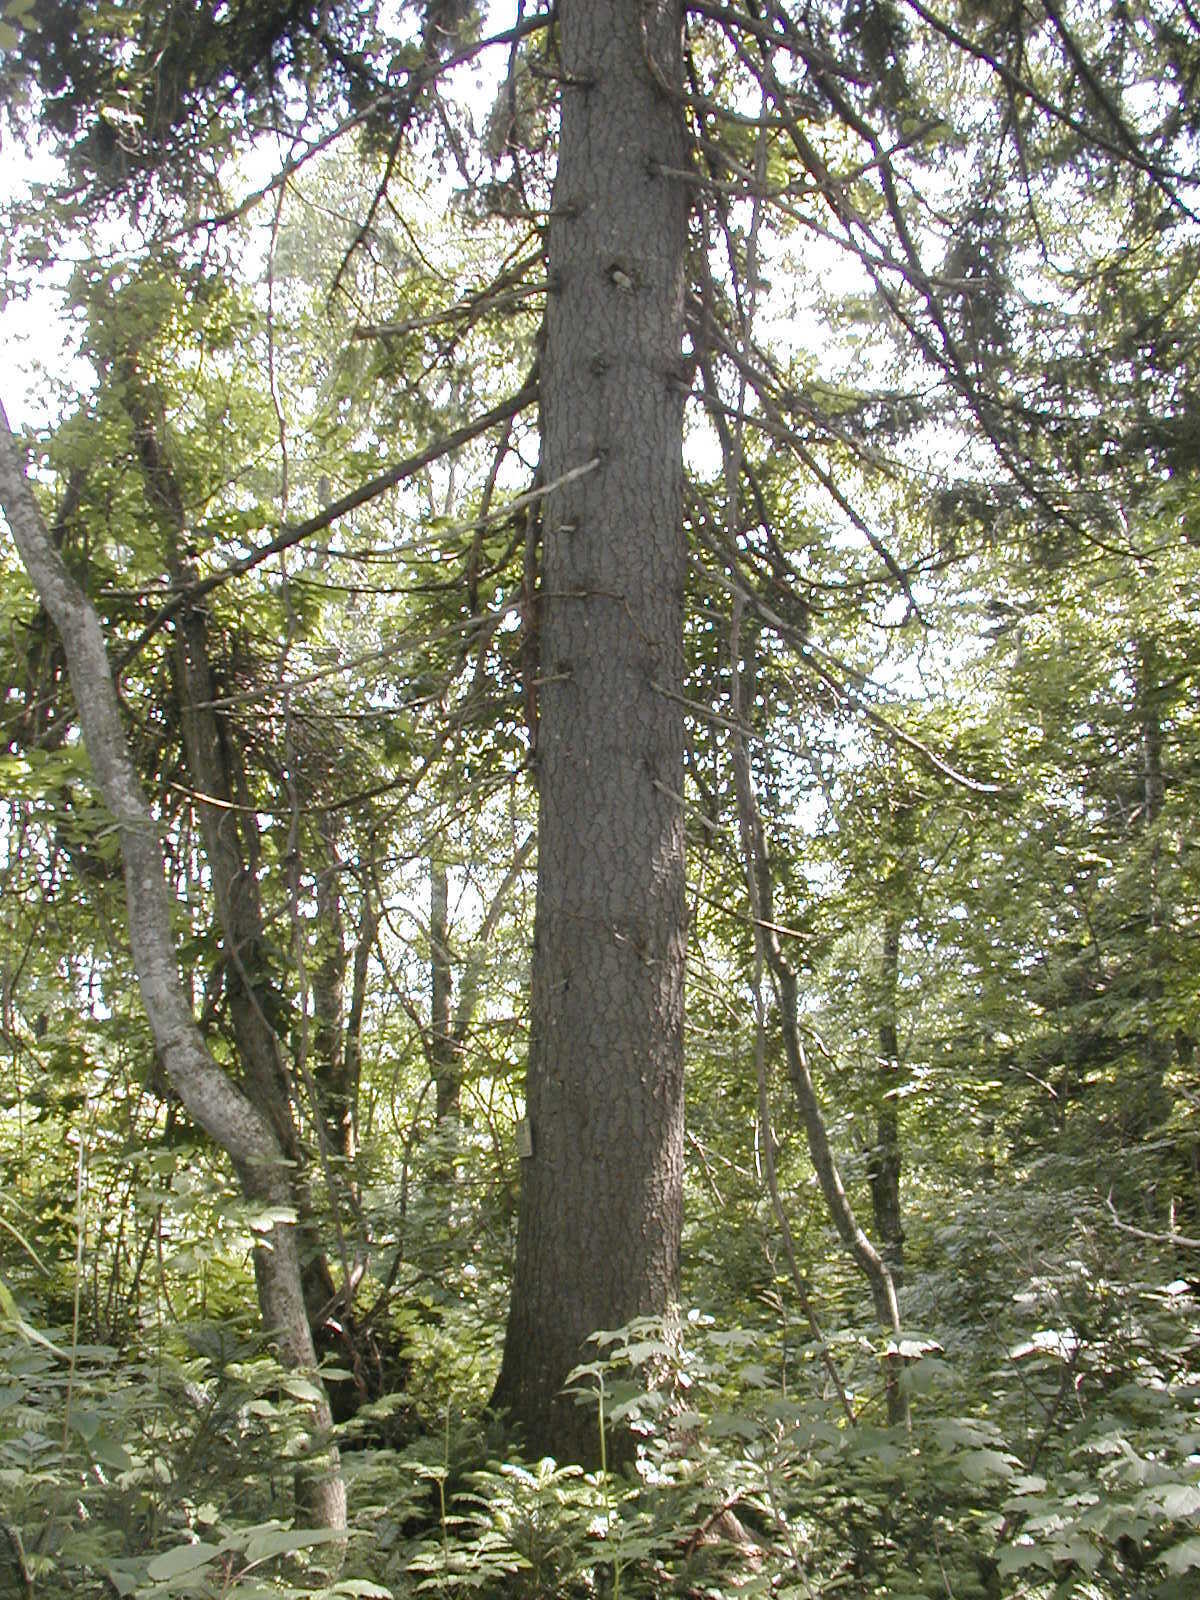 ・クロエゾマツの大径木（写真の木は胸高直径が約60センチメートル）が点在して生育しています。